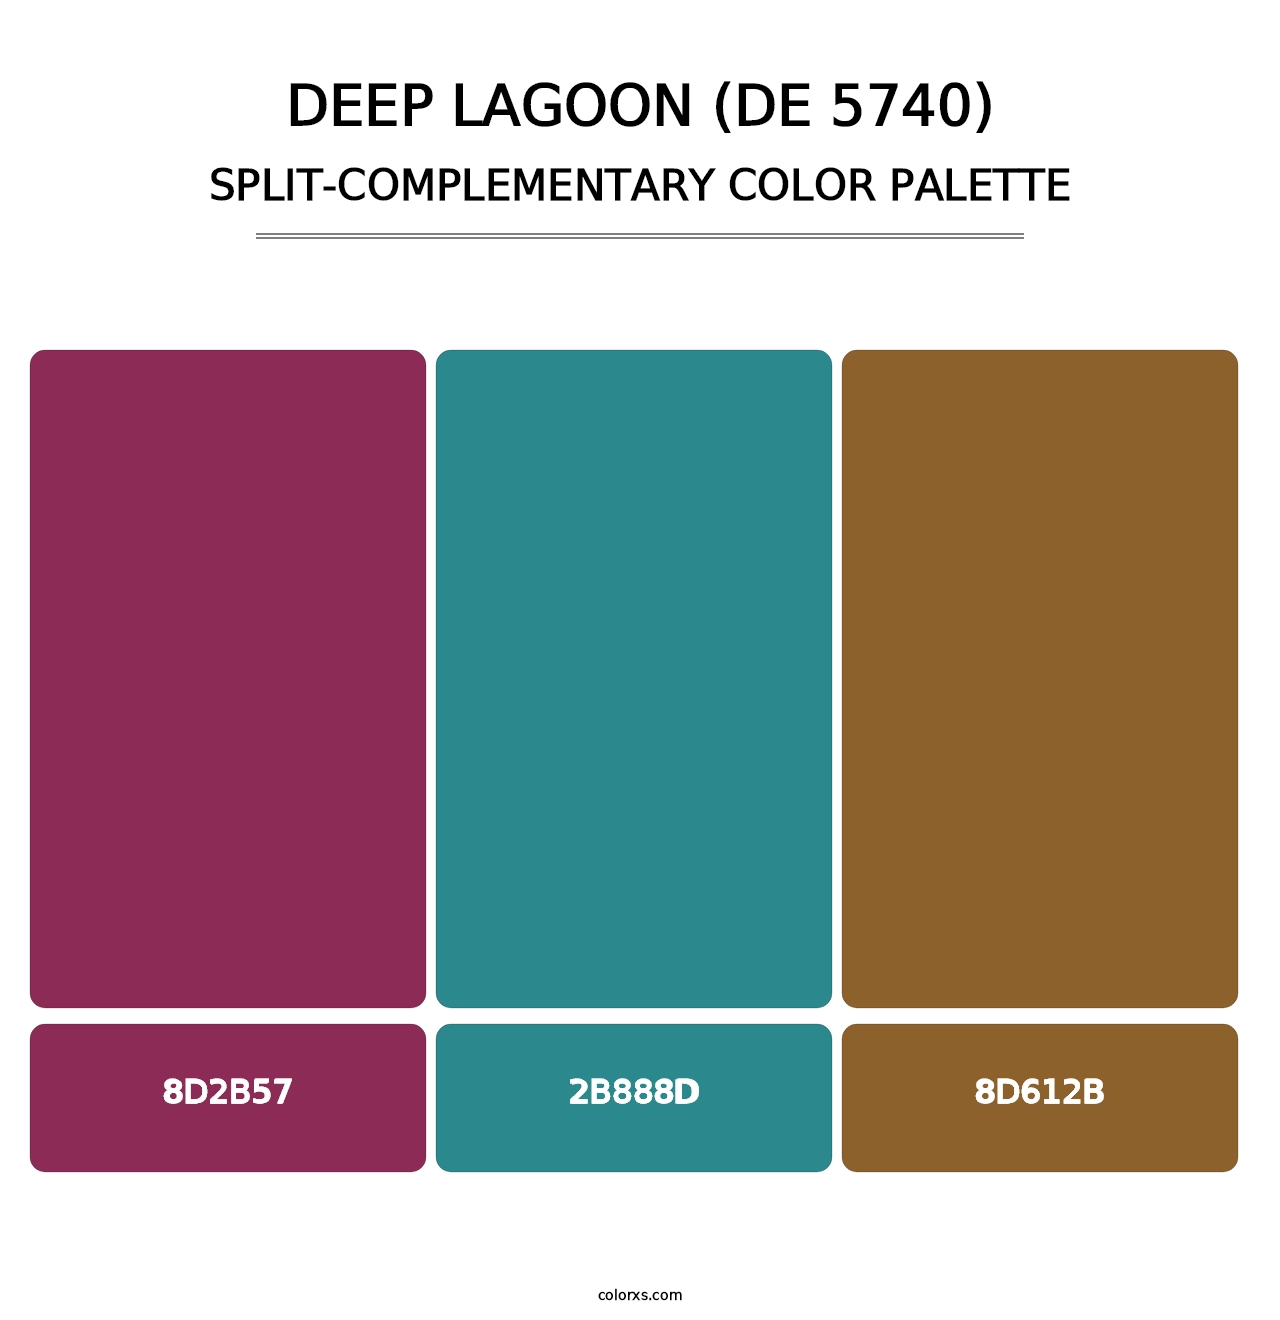 Deep Lagoon (DE 5740) - Split-Complementary Color Palette